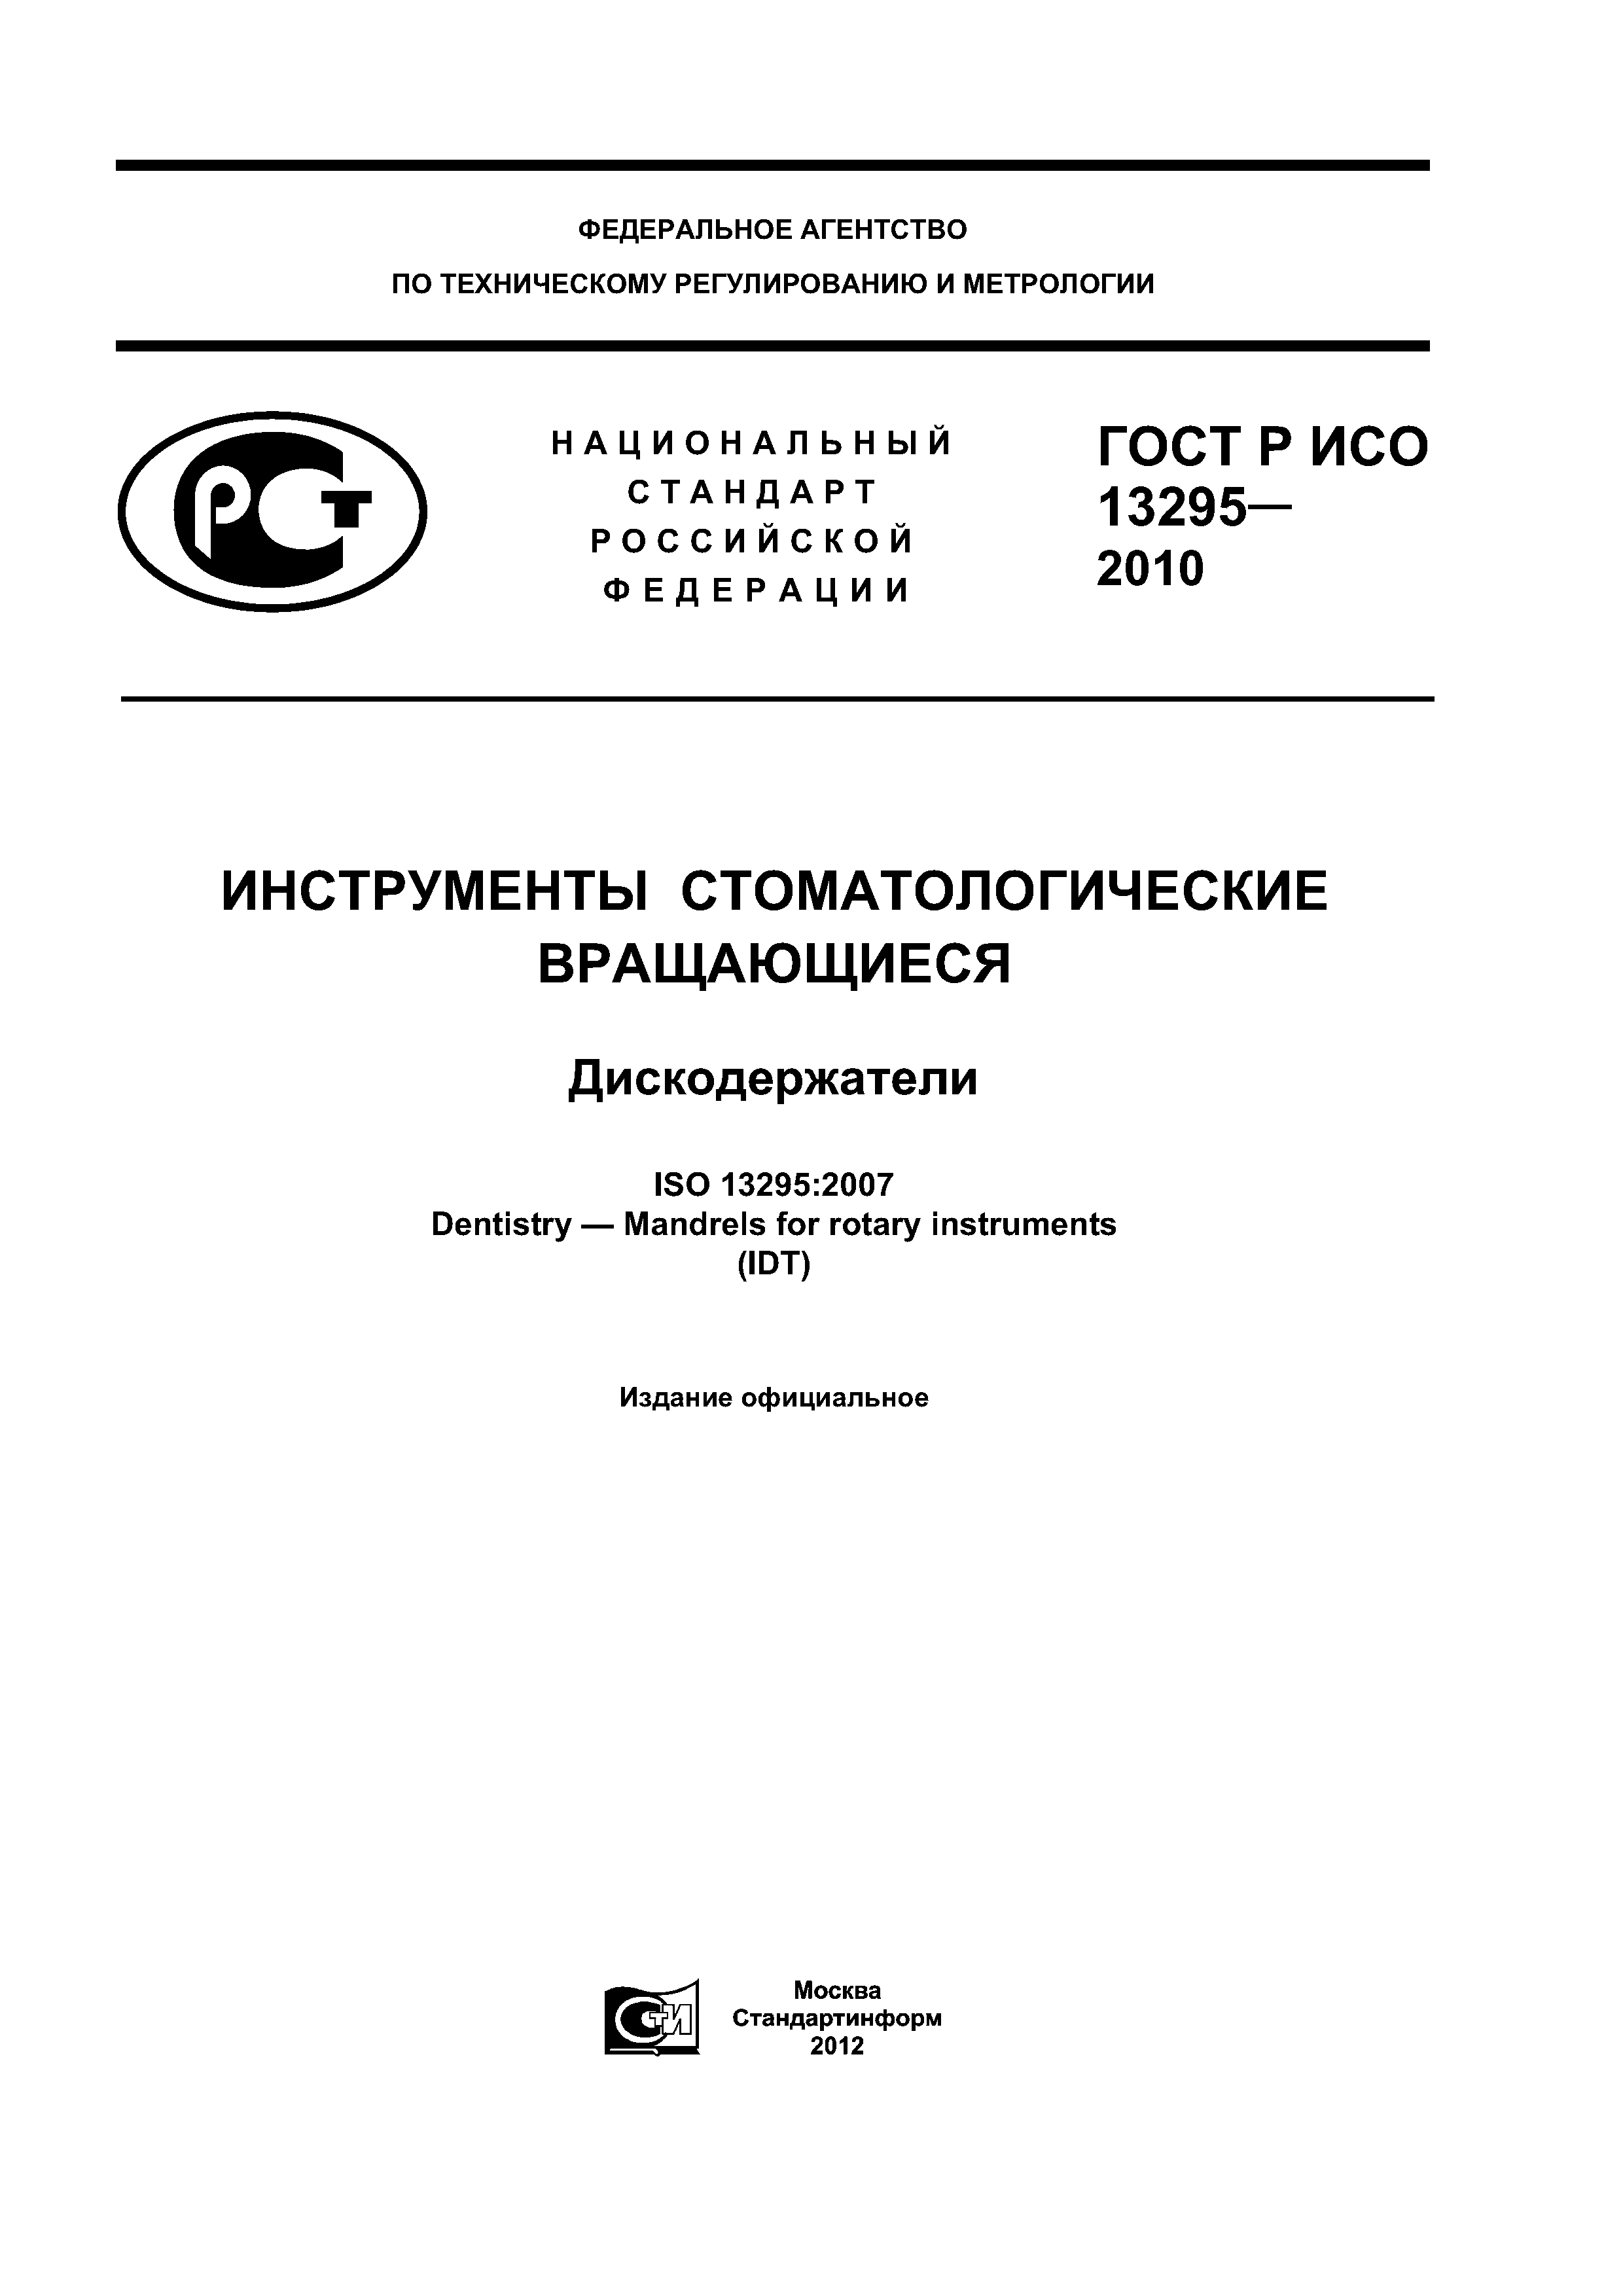 ГОСТ Р ИСО 13295-2010